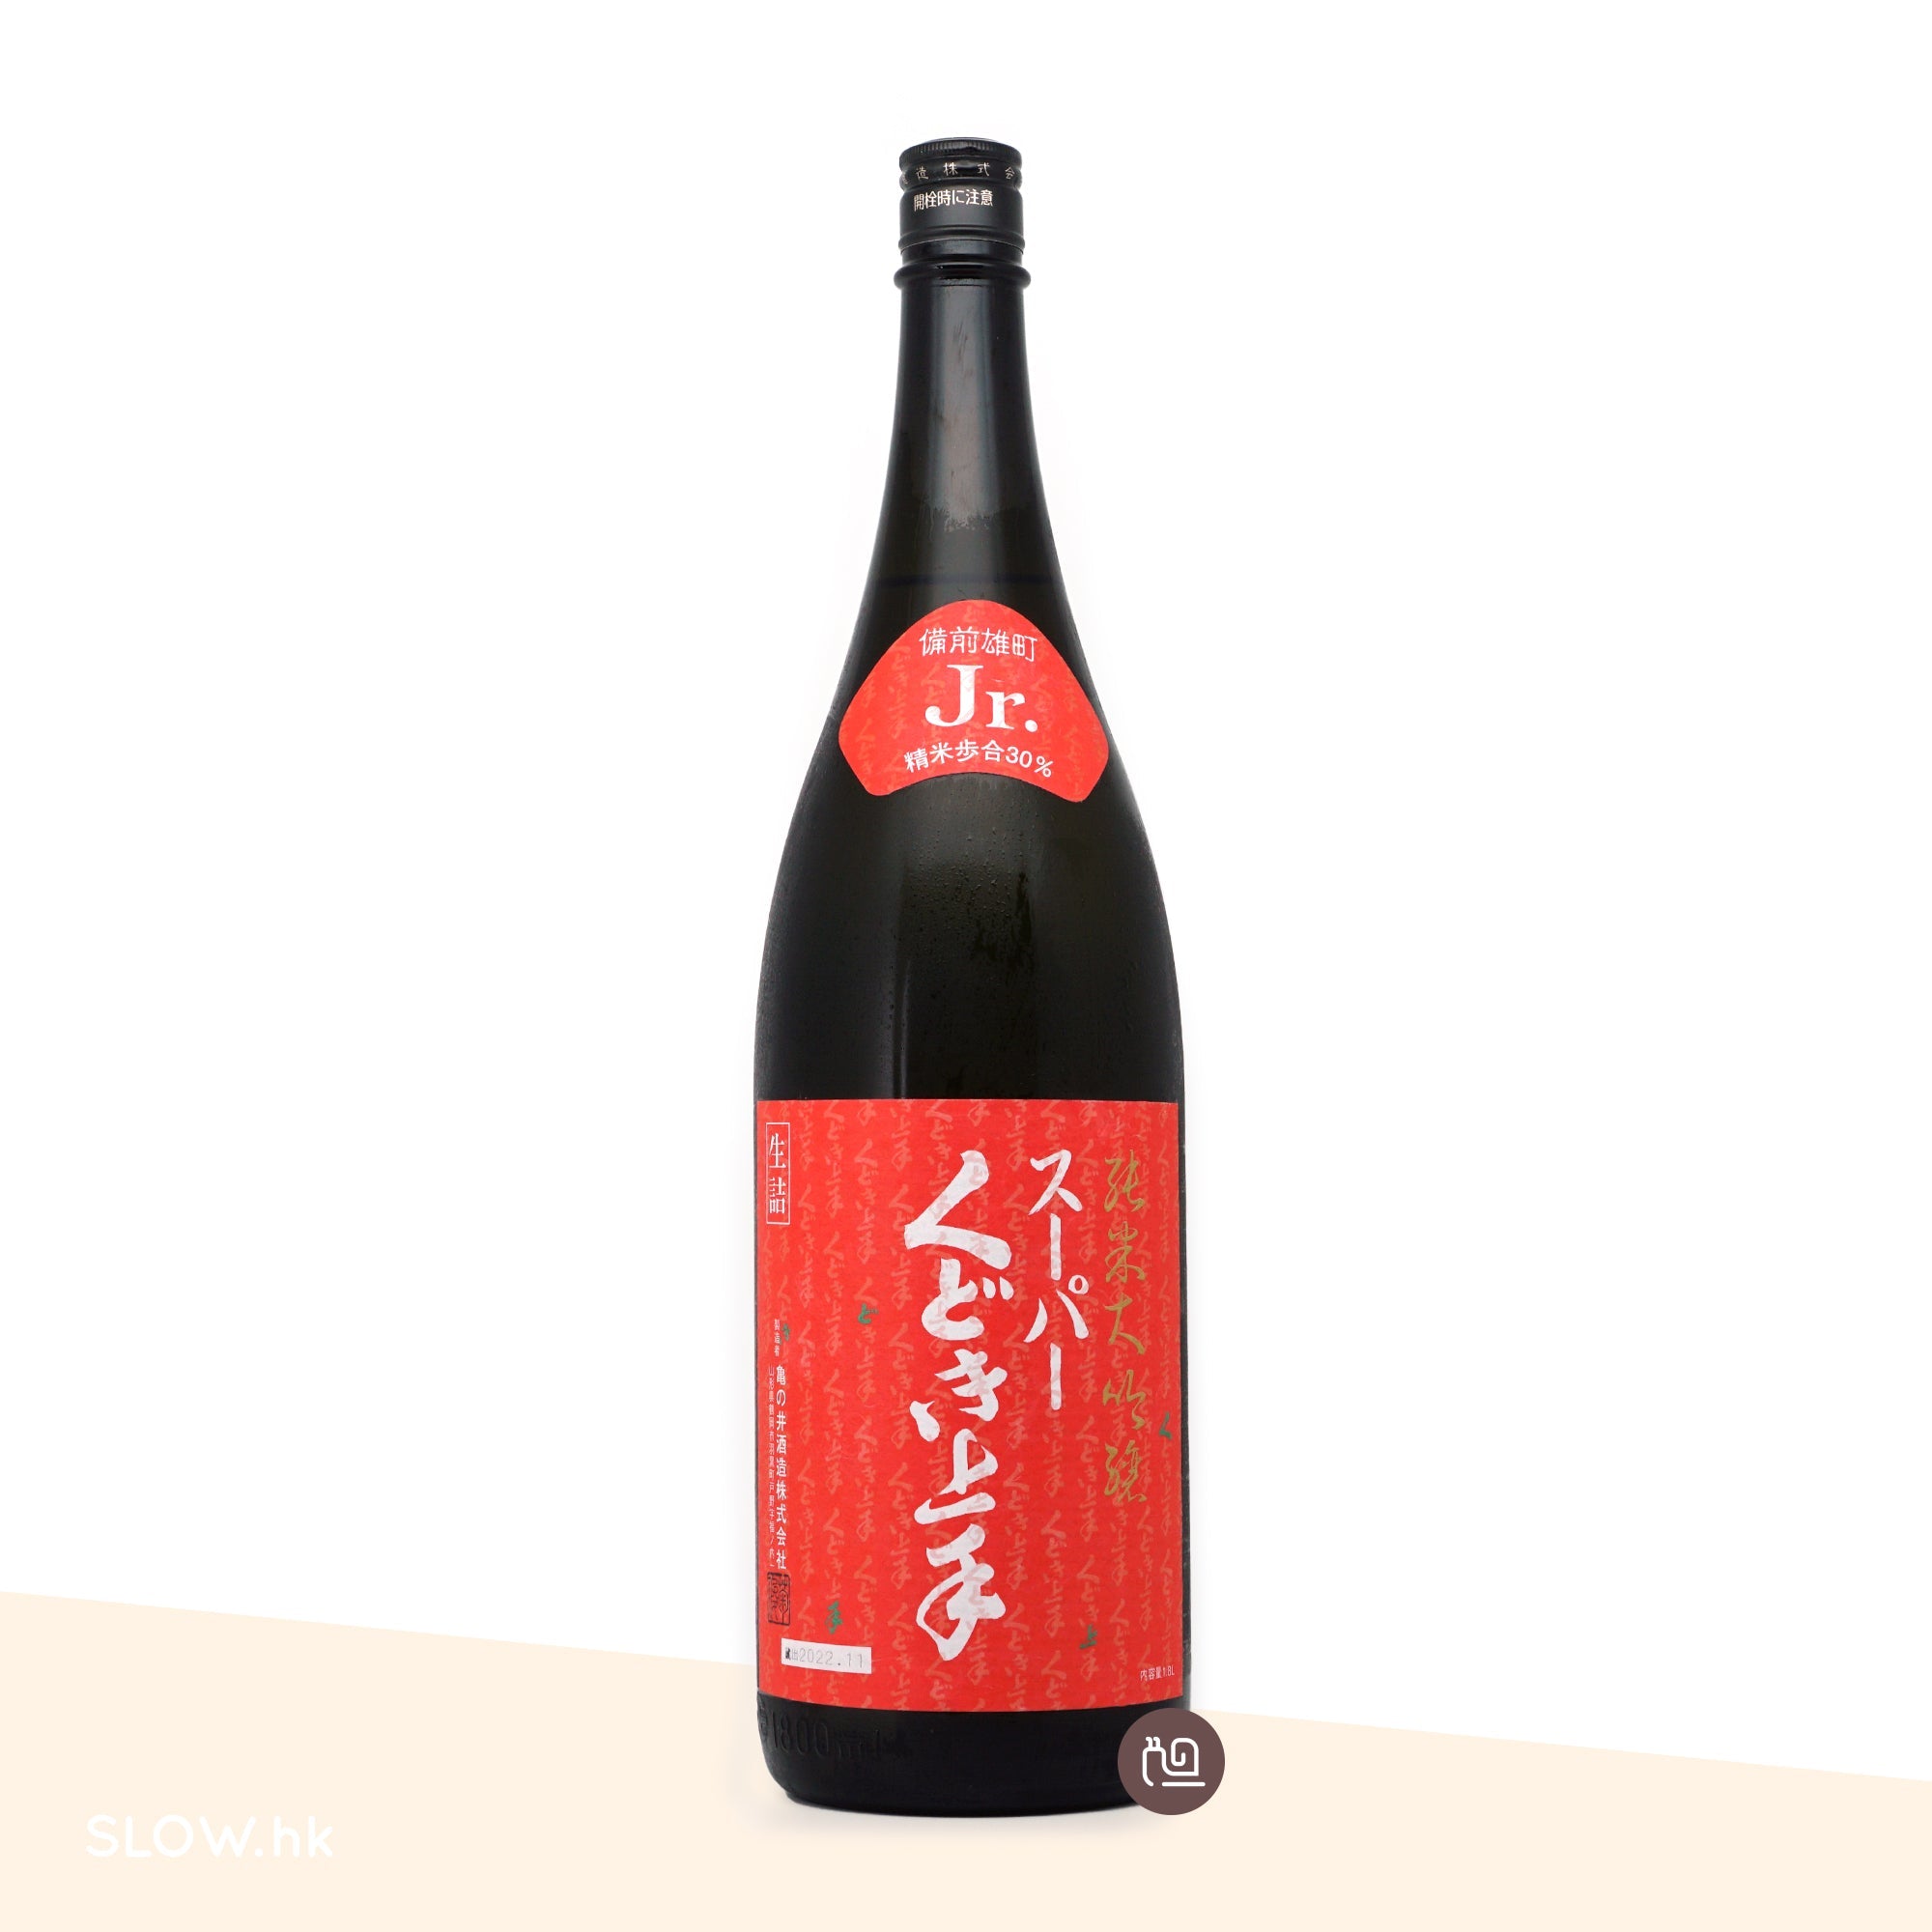 一升瓶(1800mL) 系列| 日本酒| 美酒– SLOW.hk